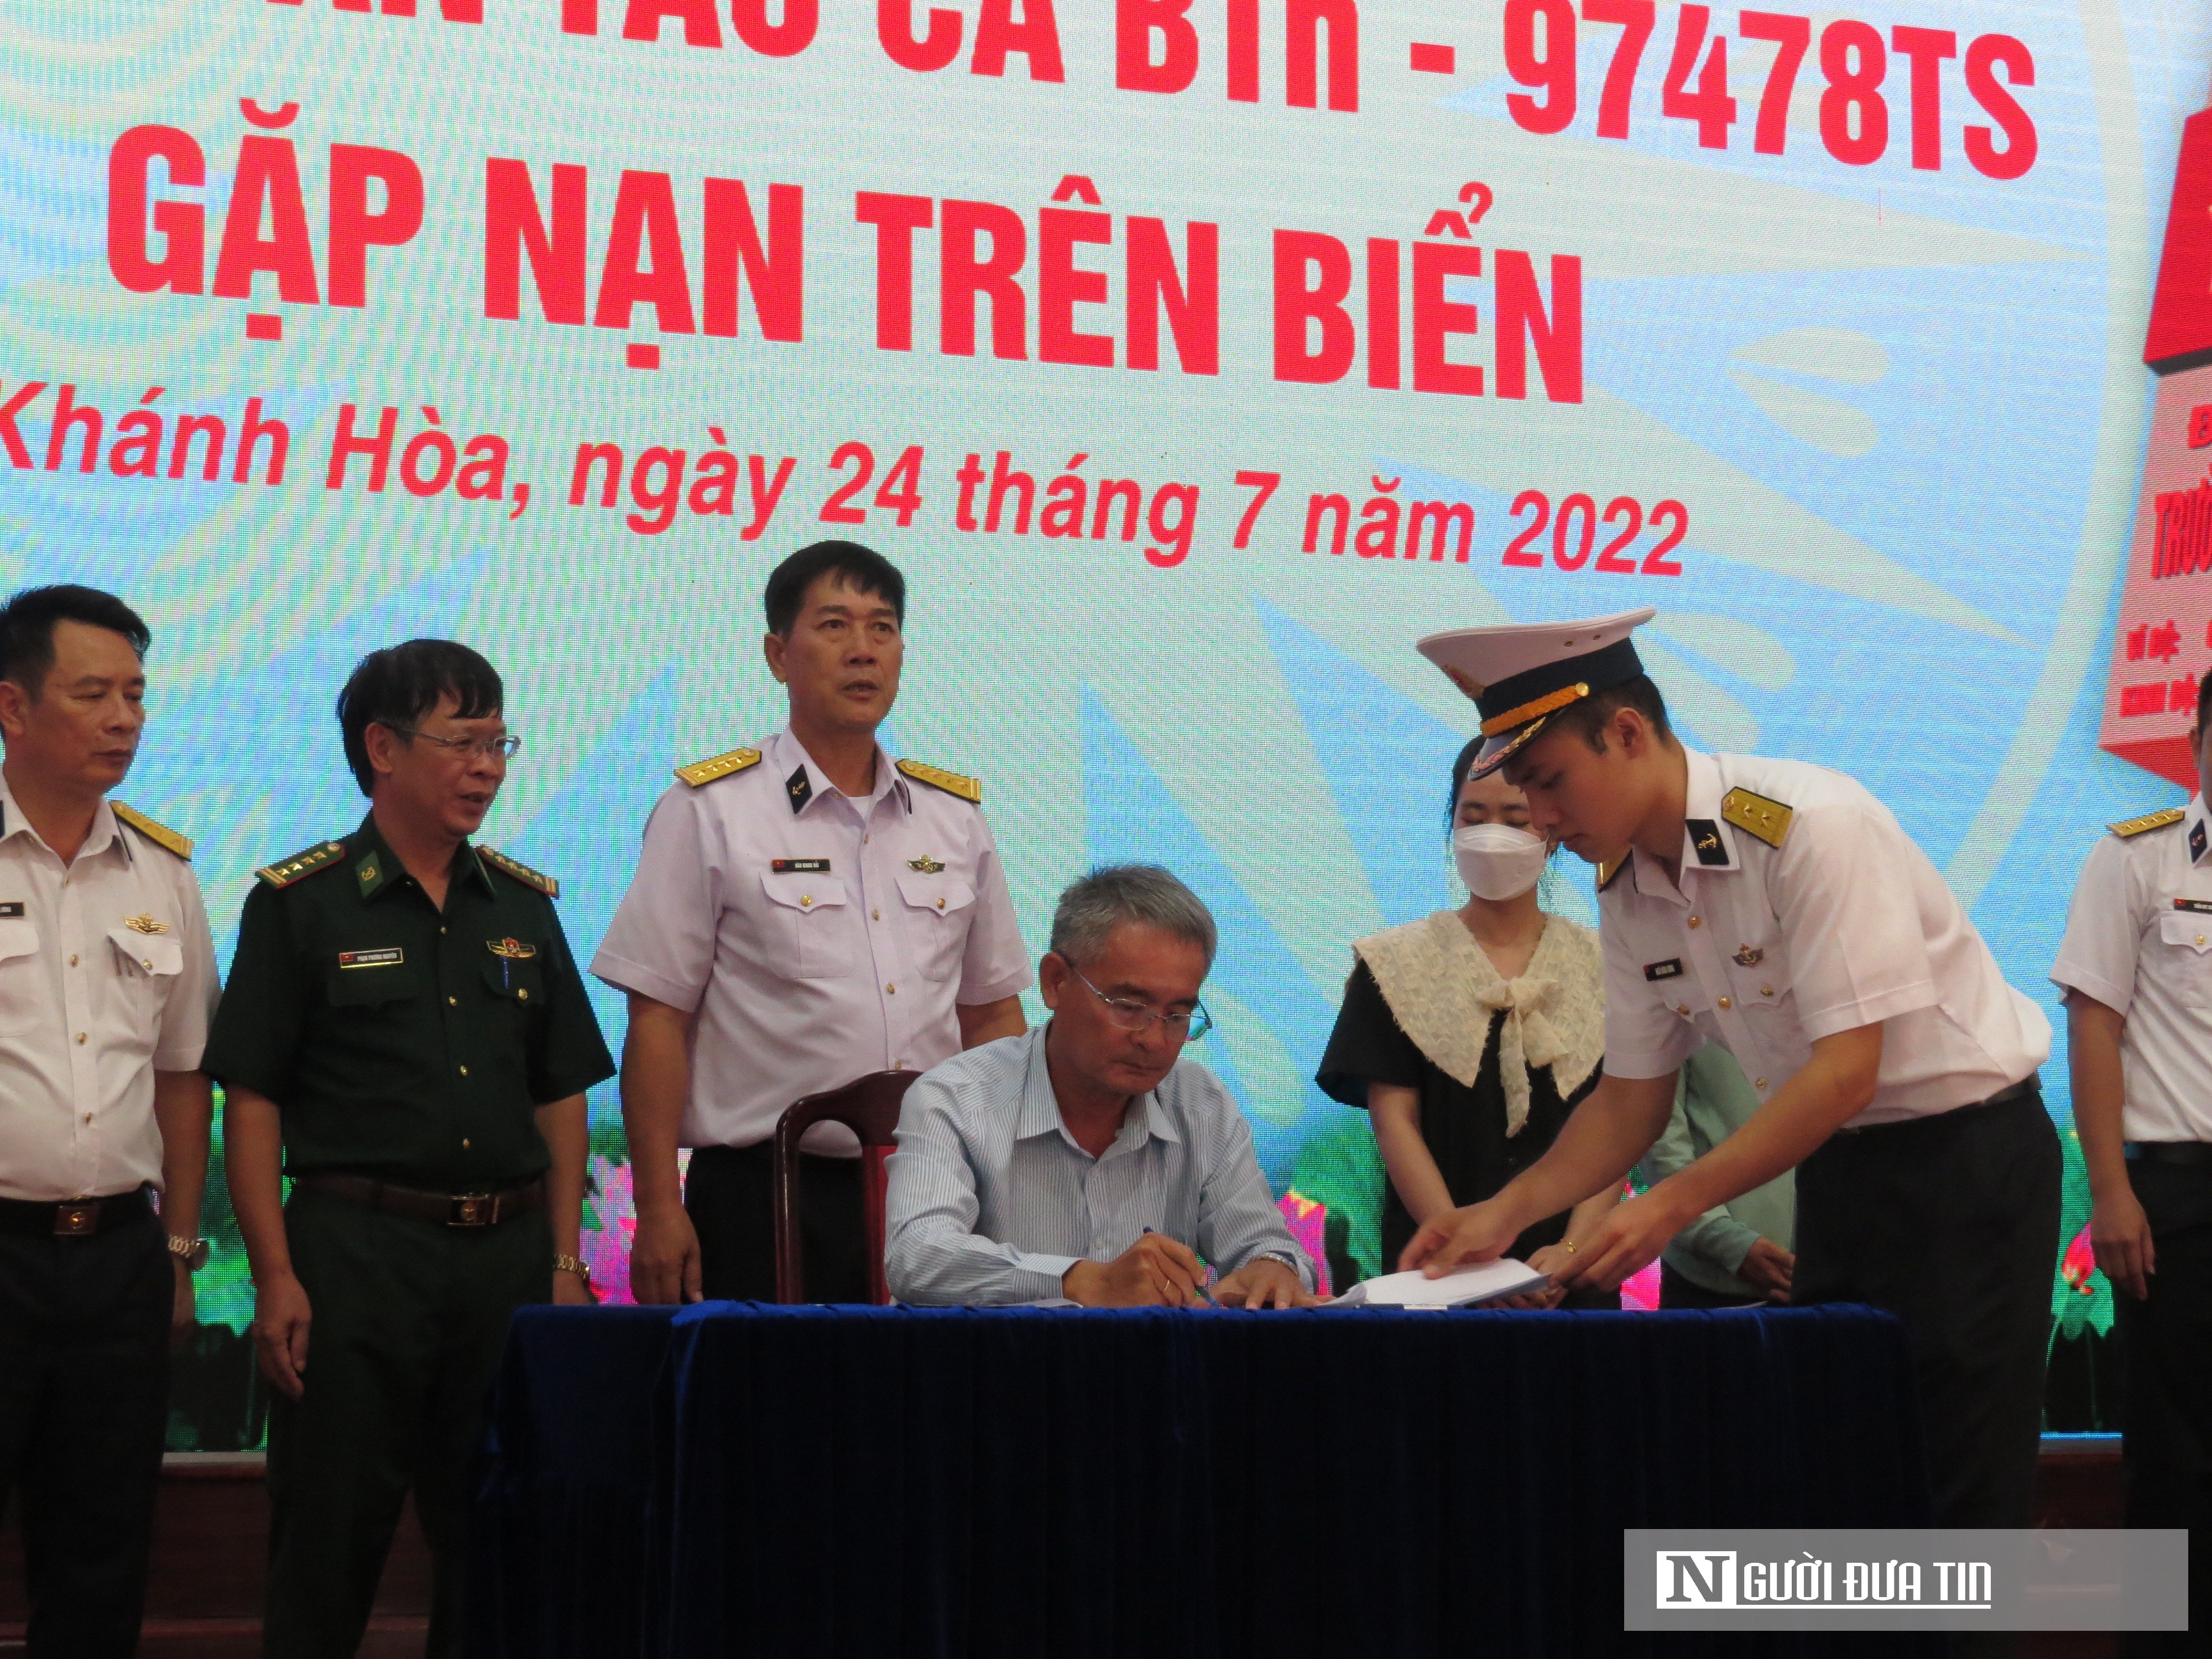 Dân sinh - Bàn giao 5 ngư dân tàu Bình Thuận được cứu sống sau 12 ngày mất tích (Hình 11).